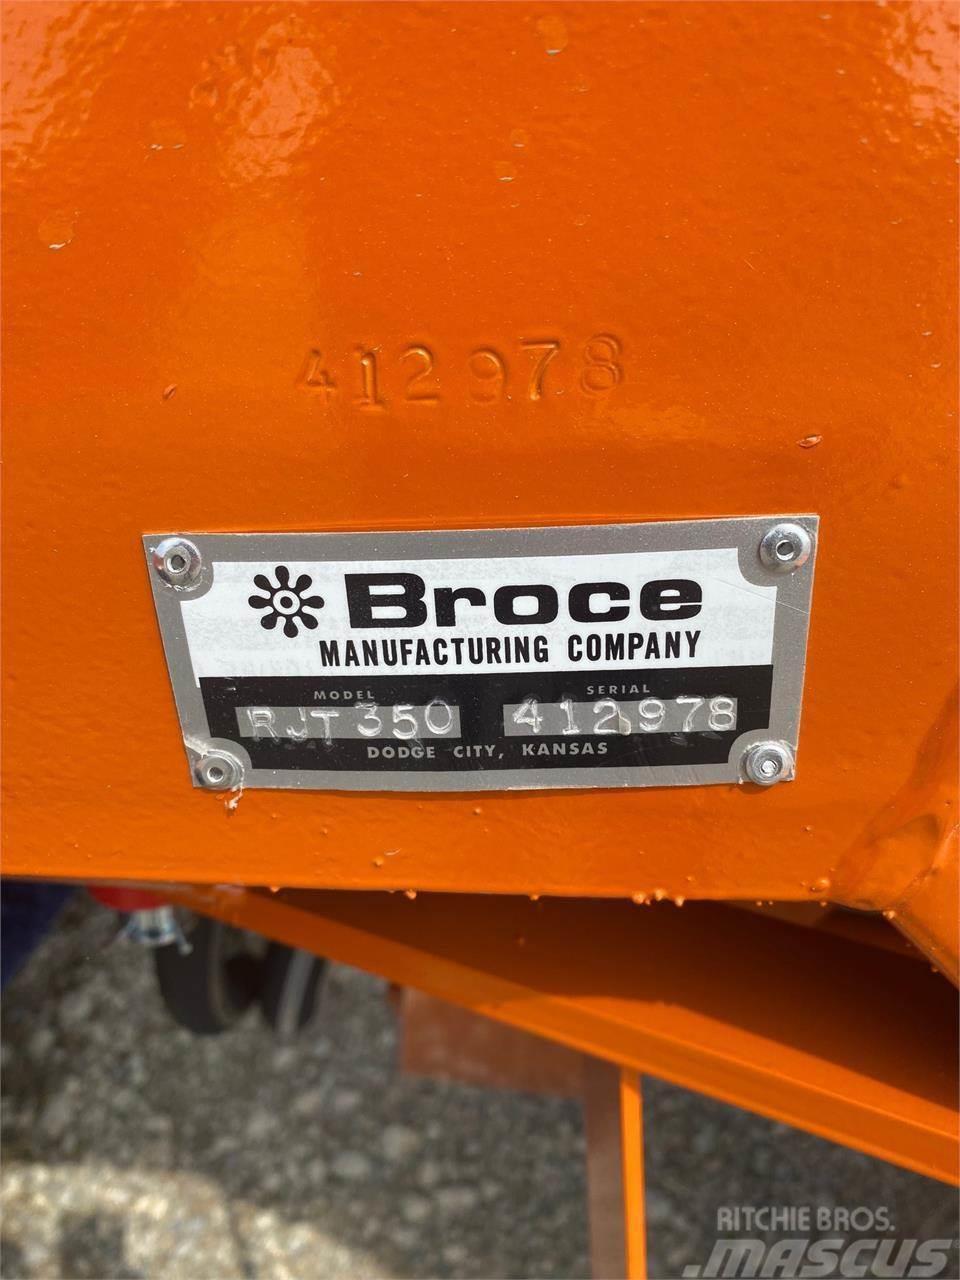 Broce RJT350 Varredoras